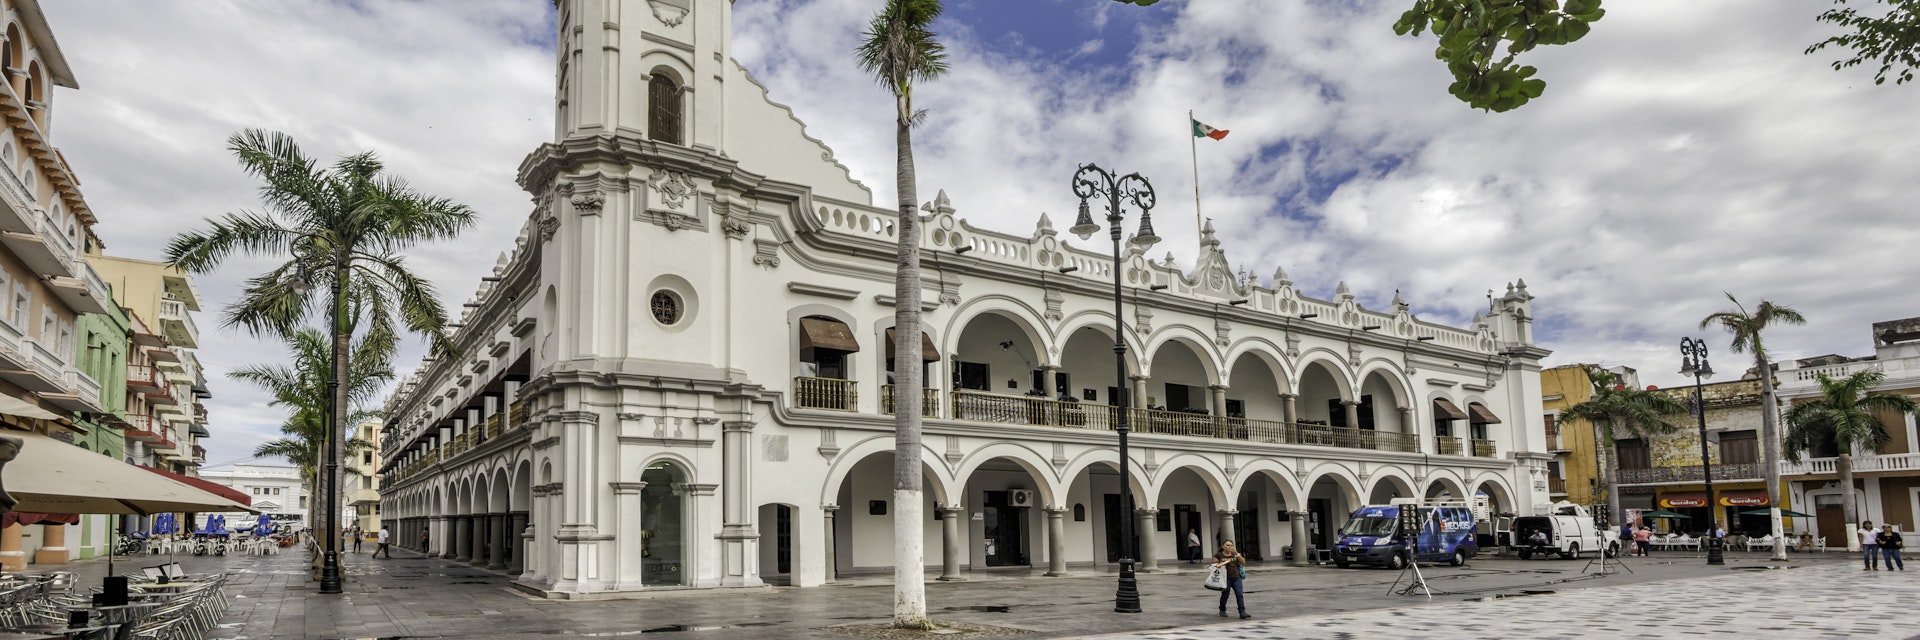 Palacio Municipal at zocalo in Veracruz, Mexico